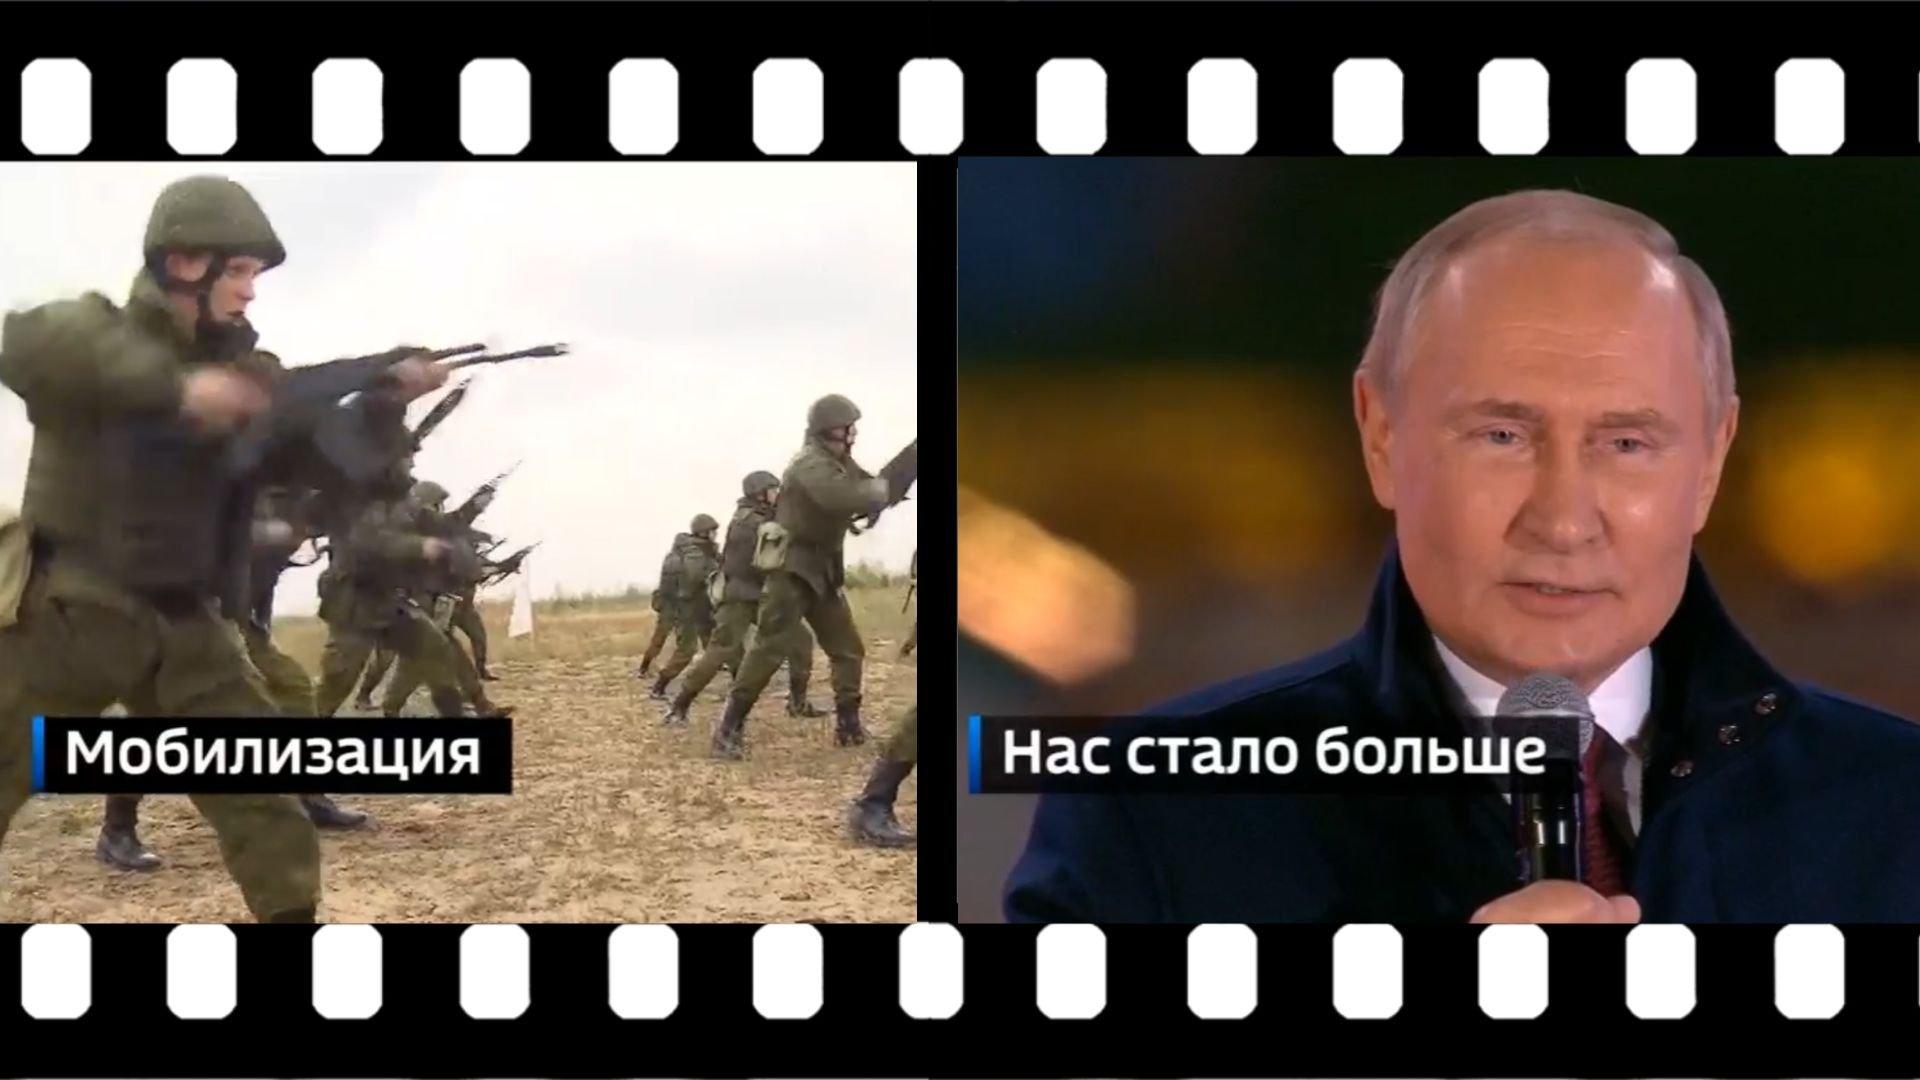 Żołnierze na poligonie i Putin (zdjęcia podpisane po rosyjsku "Mobilizacja" i "Jest nas więcej")